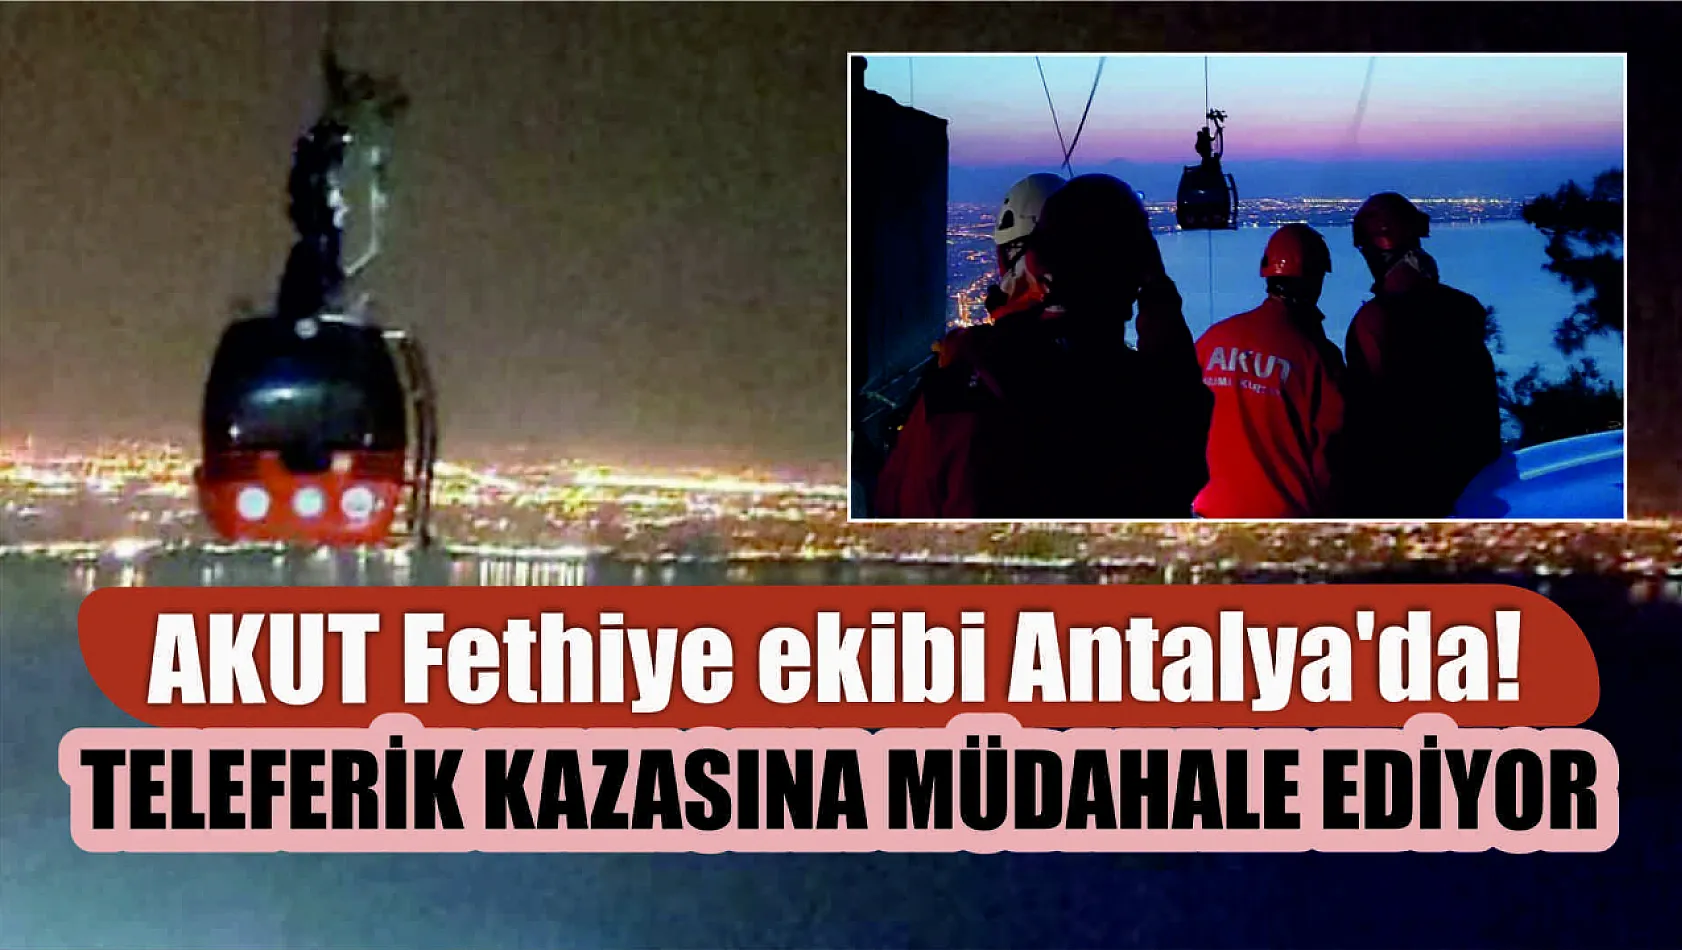 AKUT Fethiye ekibi Antalya'da! Teleferik kazasına müdahale ediyor